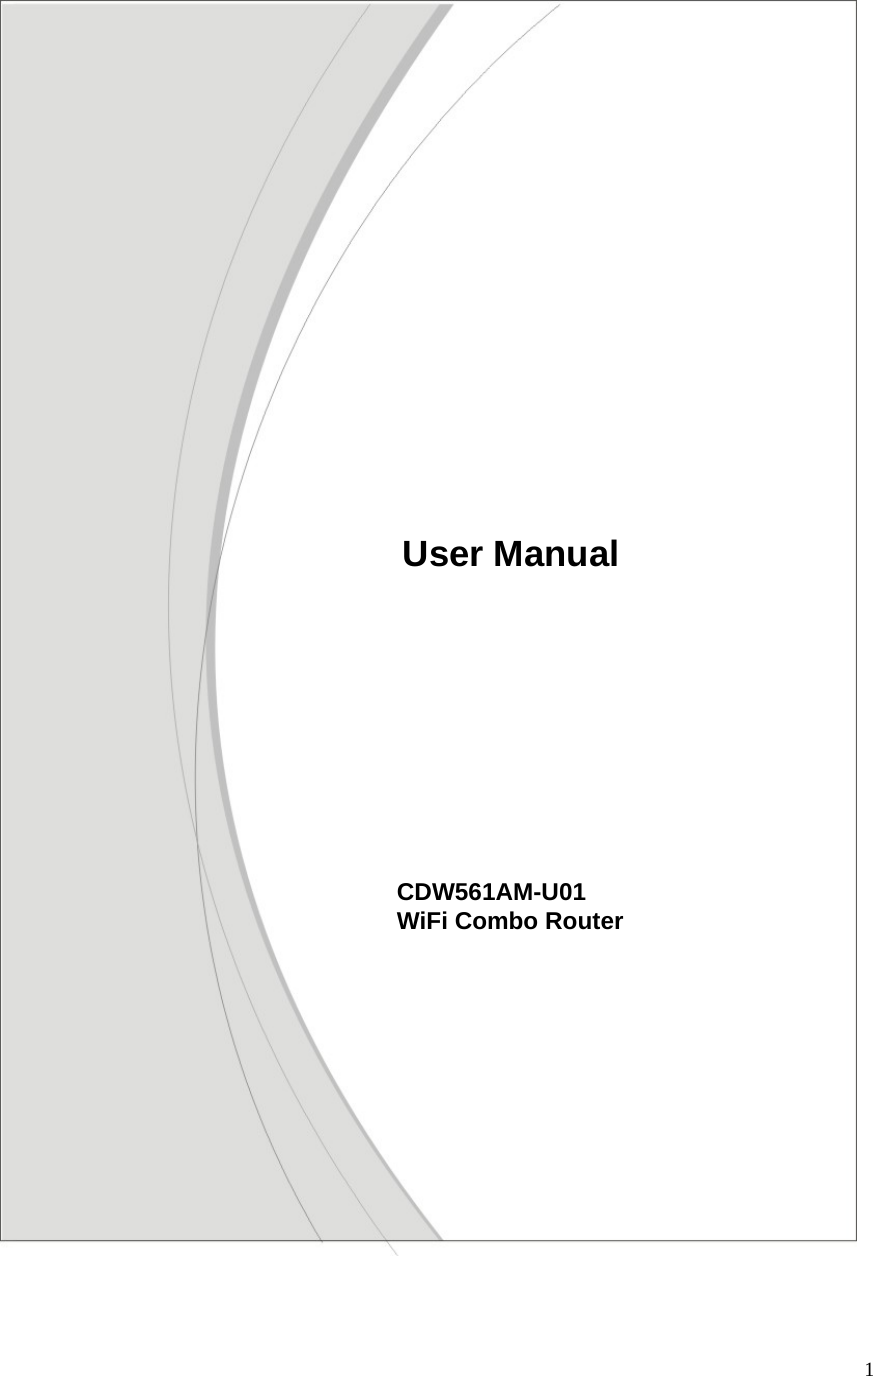  1                                                                                                   CDW561AM-U01  WiFi Combo Router              User Manual 